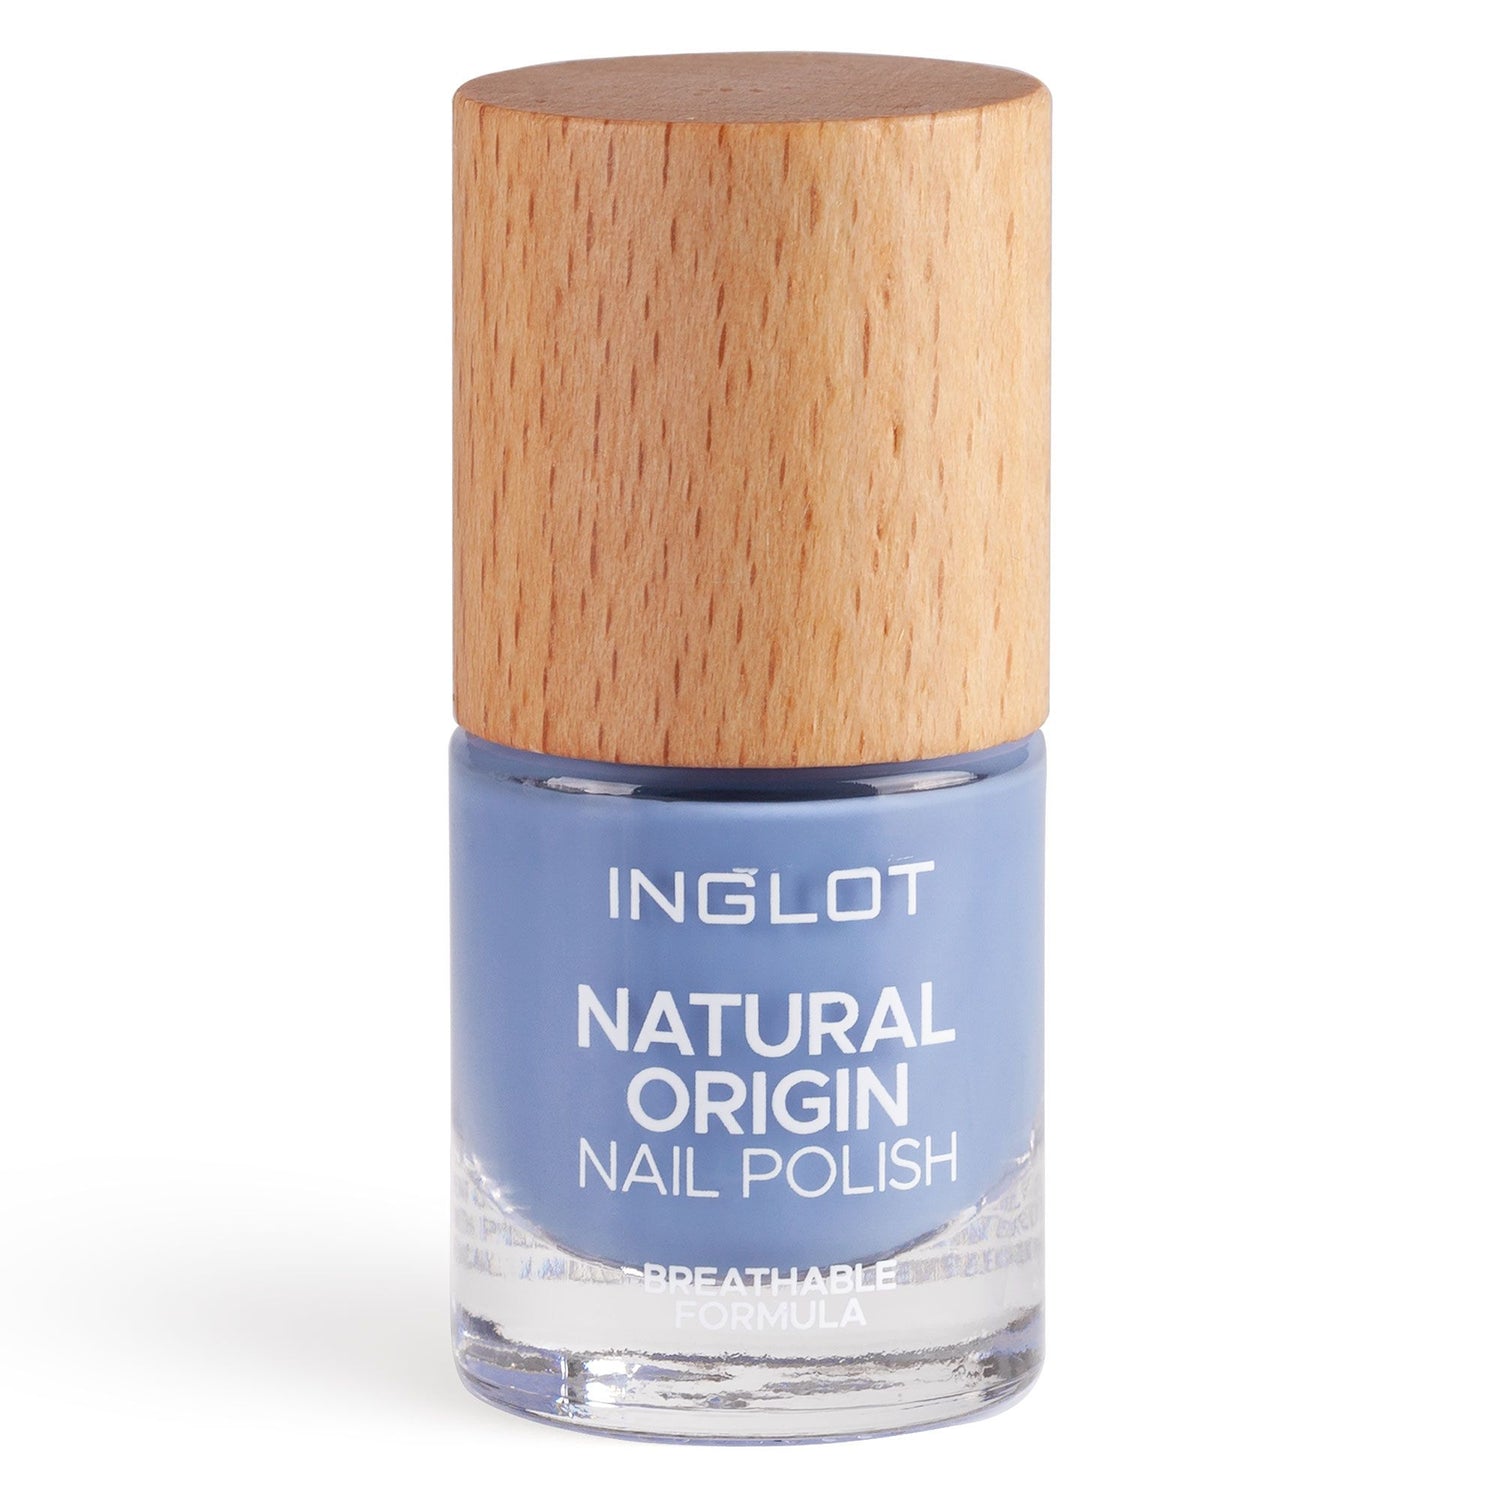 Natural Origin Nail Polish - 032 Limitless Sky - Inglot Cosmetics